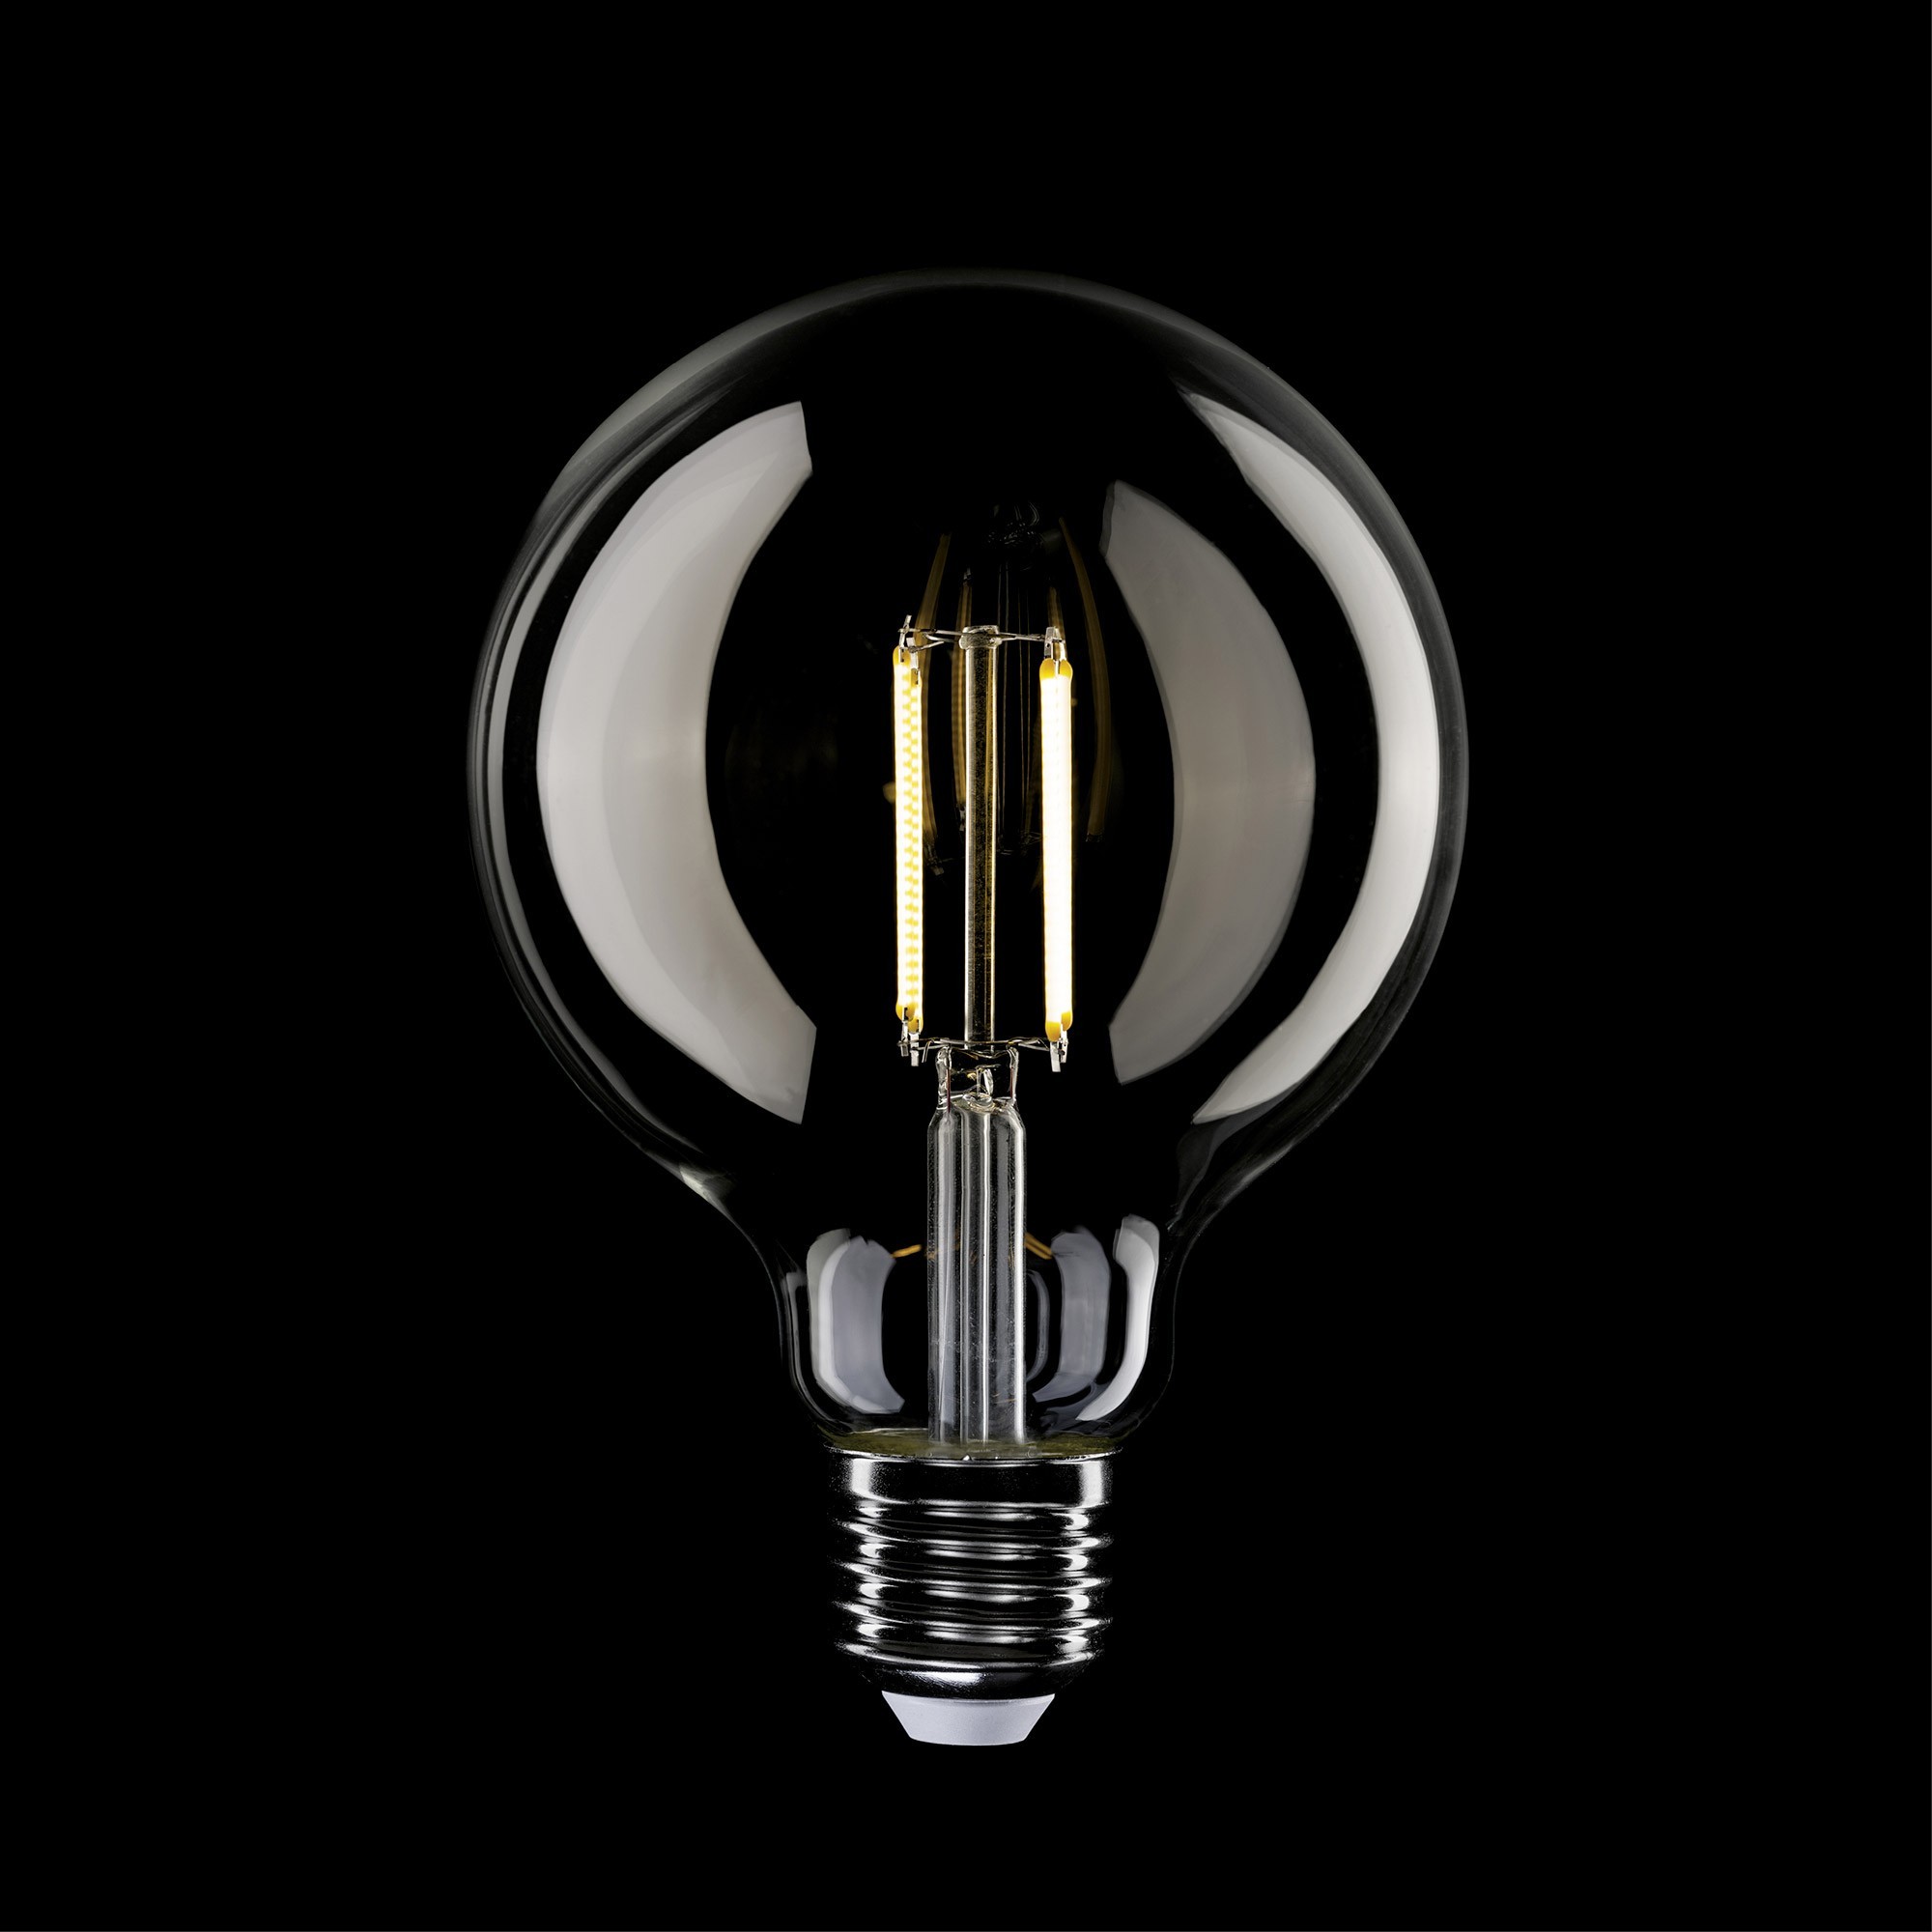 T04 - G125 LED Light Bulb, E27, 7W, 2700K, 806Lm, clear glass